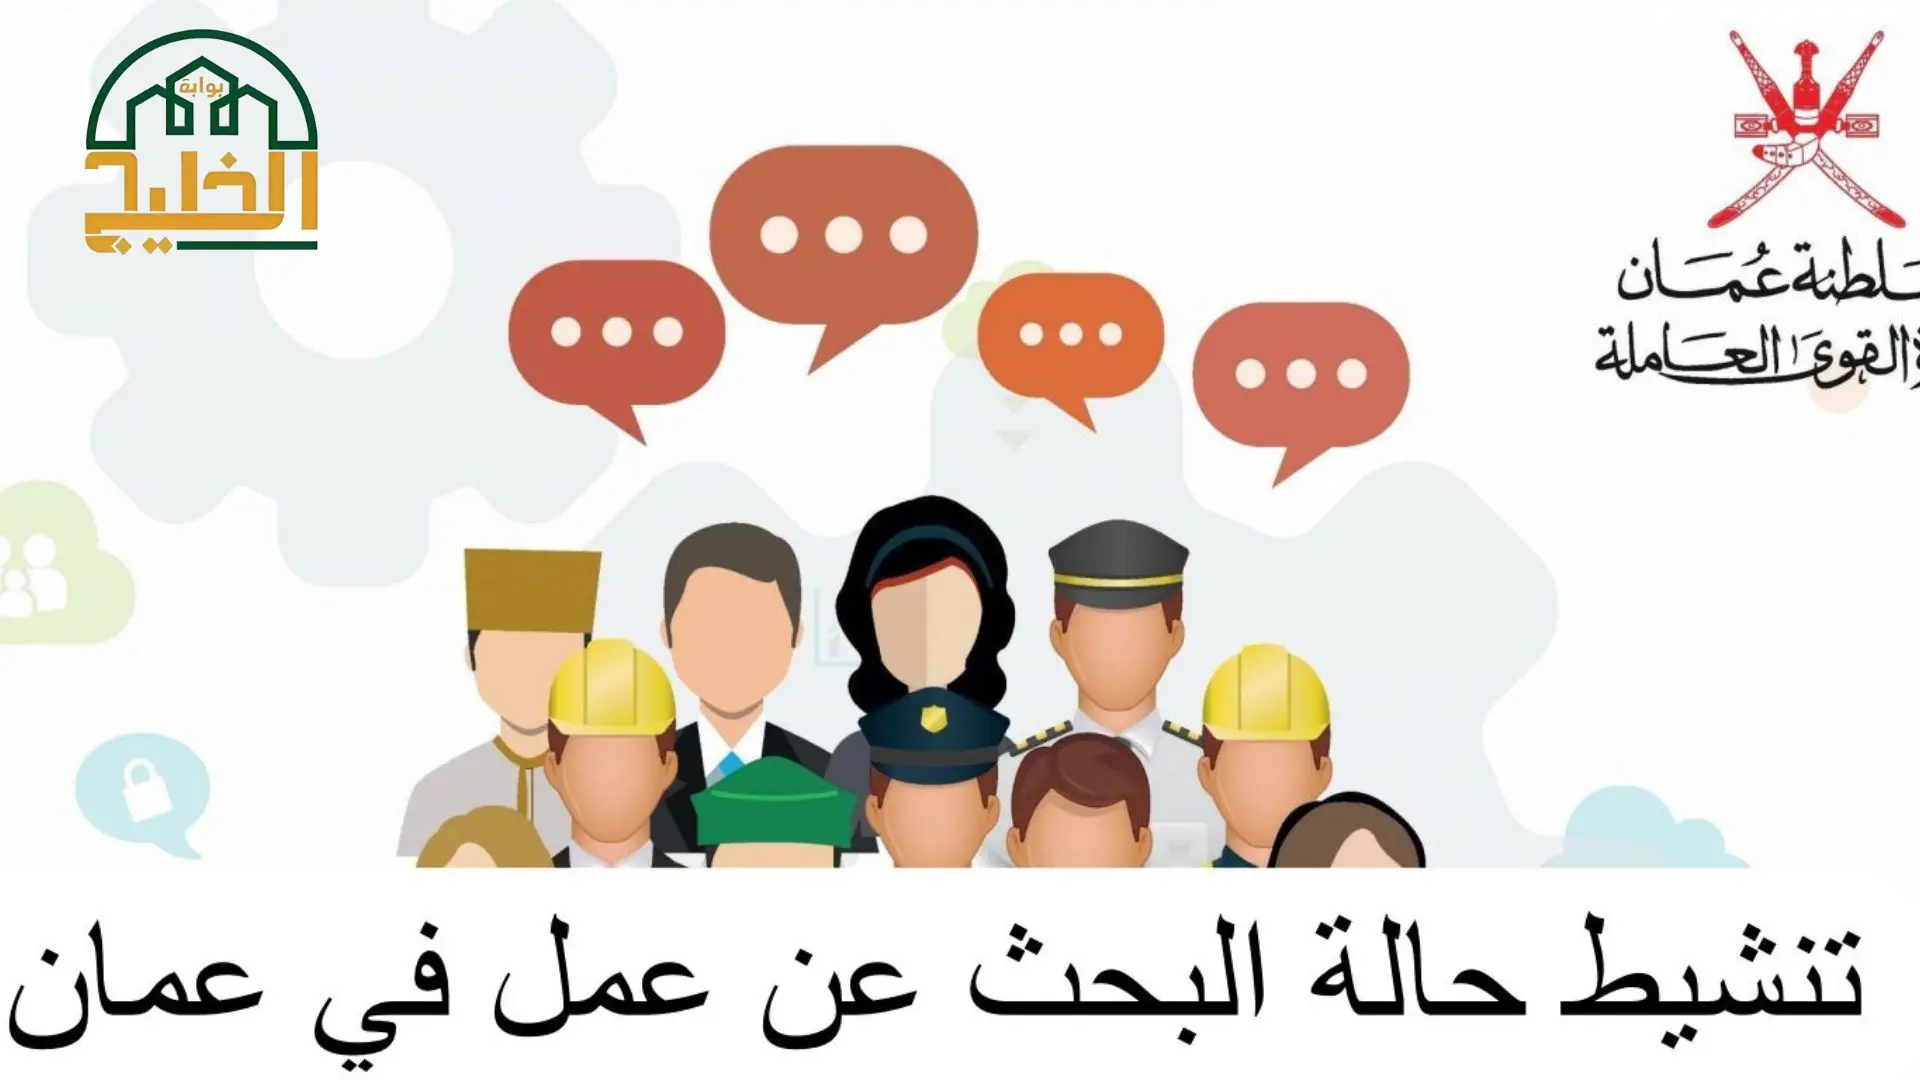 ما هي خطوات تحديث بيانات القوى العاملة في سلطنة عمان؟